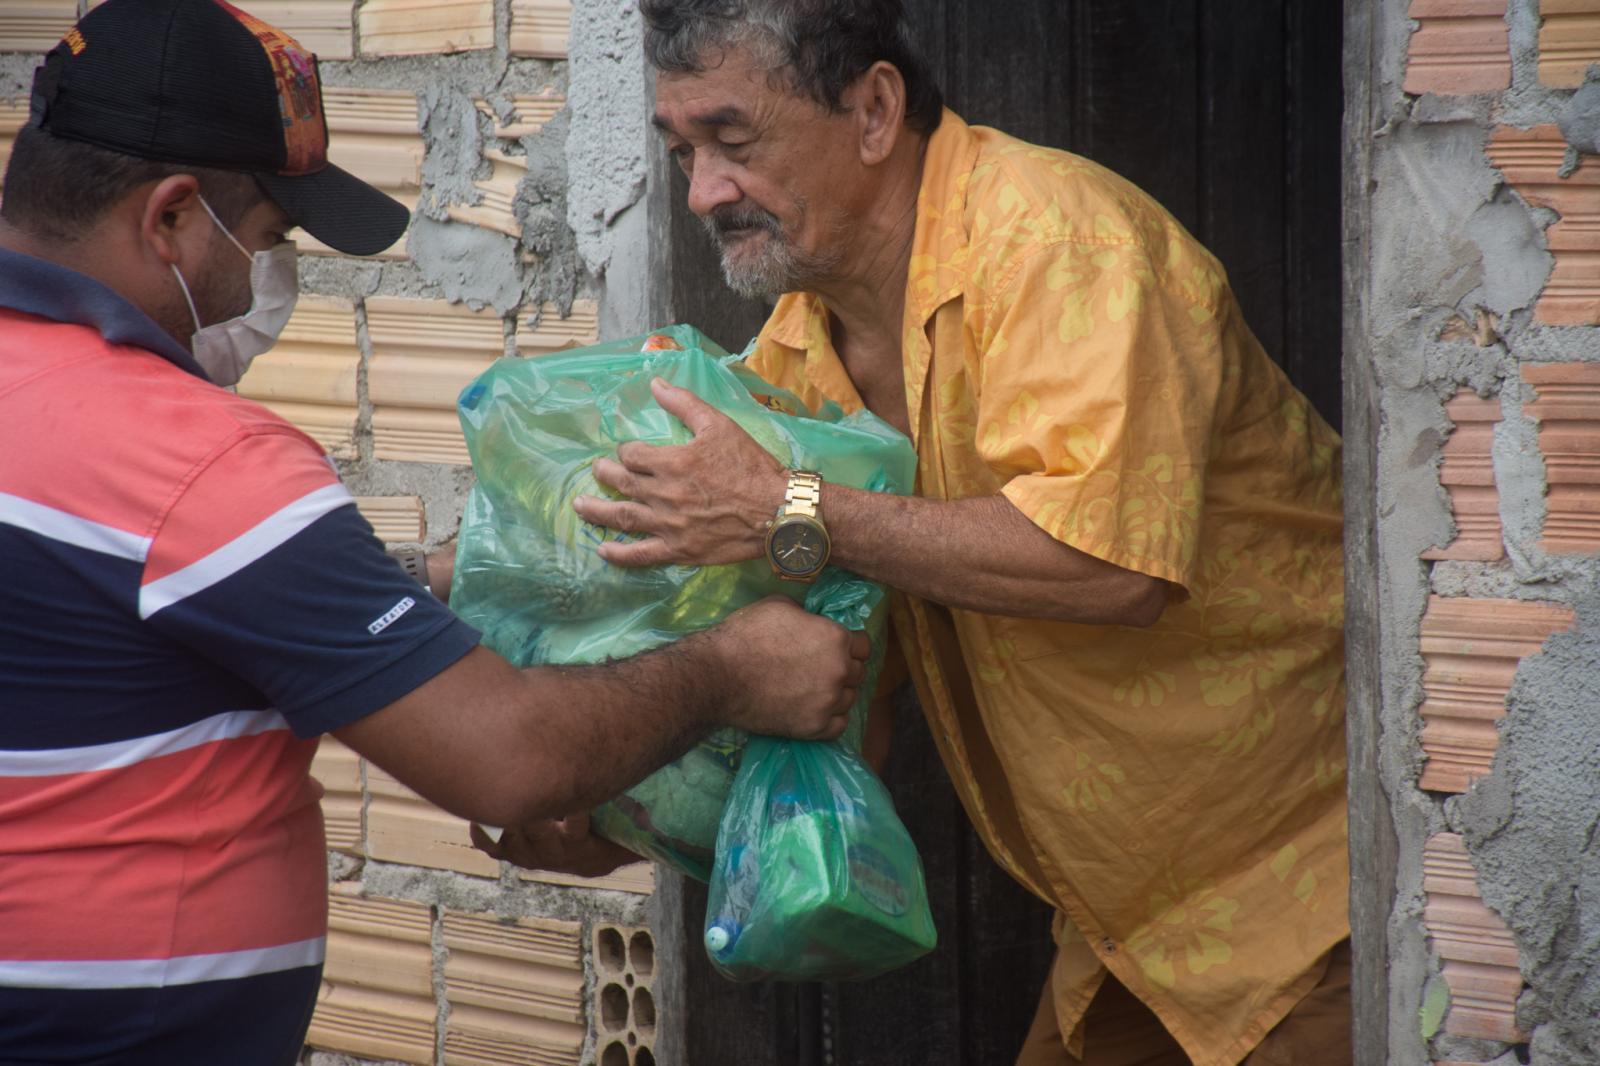 Distribuição de cestas se tornou o maior ato solidário já realizado em Maracaçumé